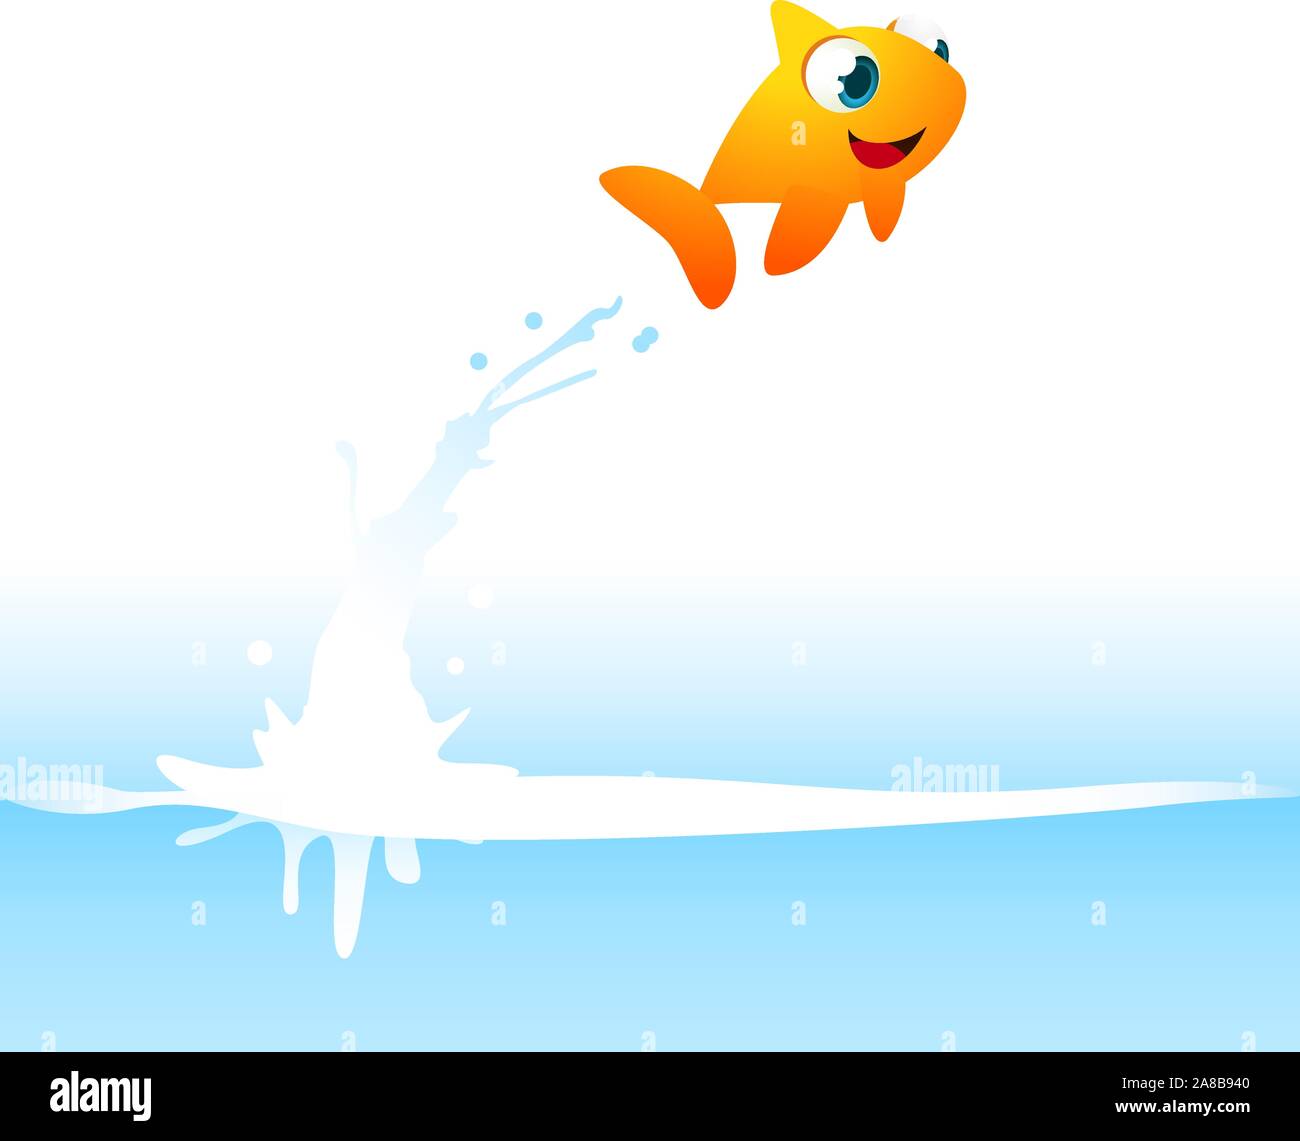 Orange Goldfisch Fisch aus dem Wasser springen, mit Wasser spritzen Vector Illustration. Stock Vektor